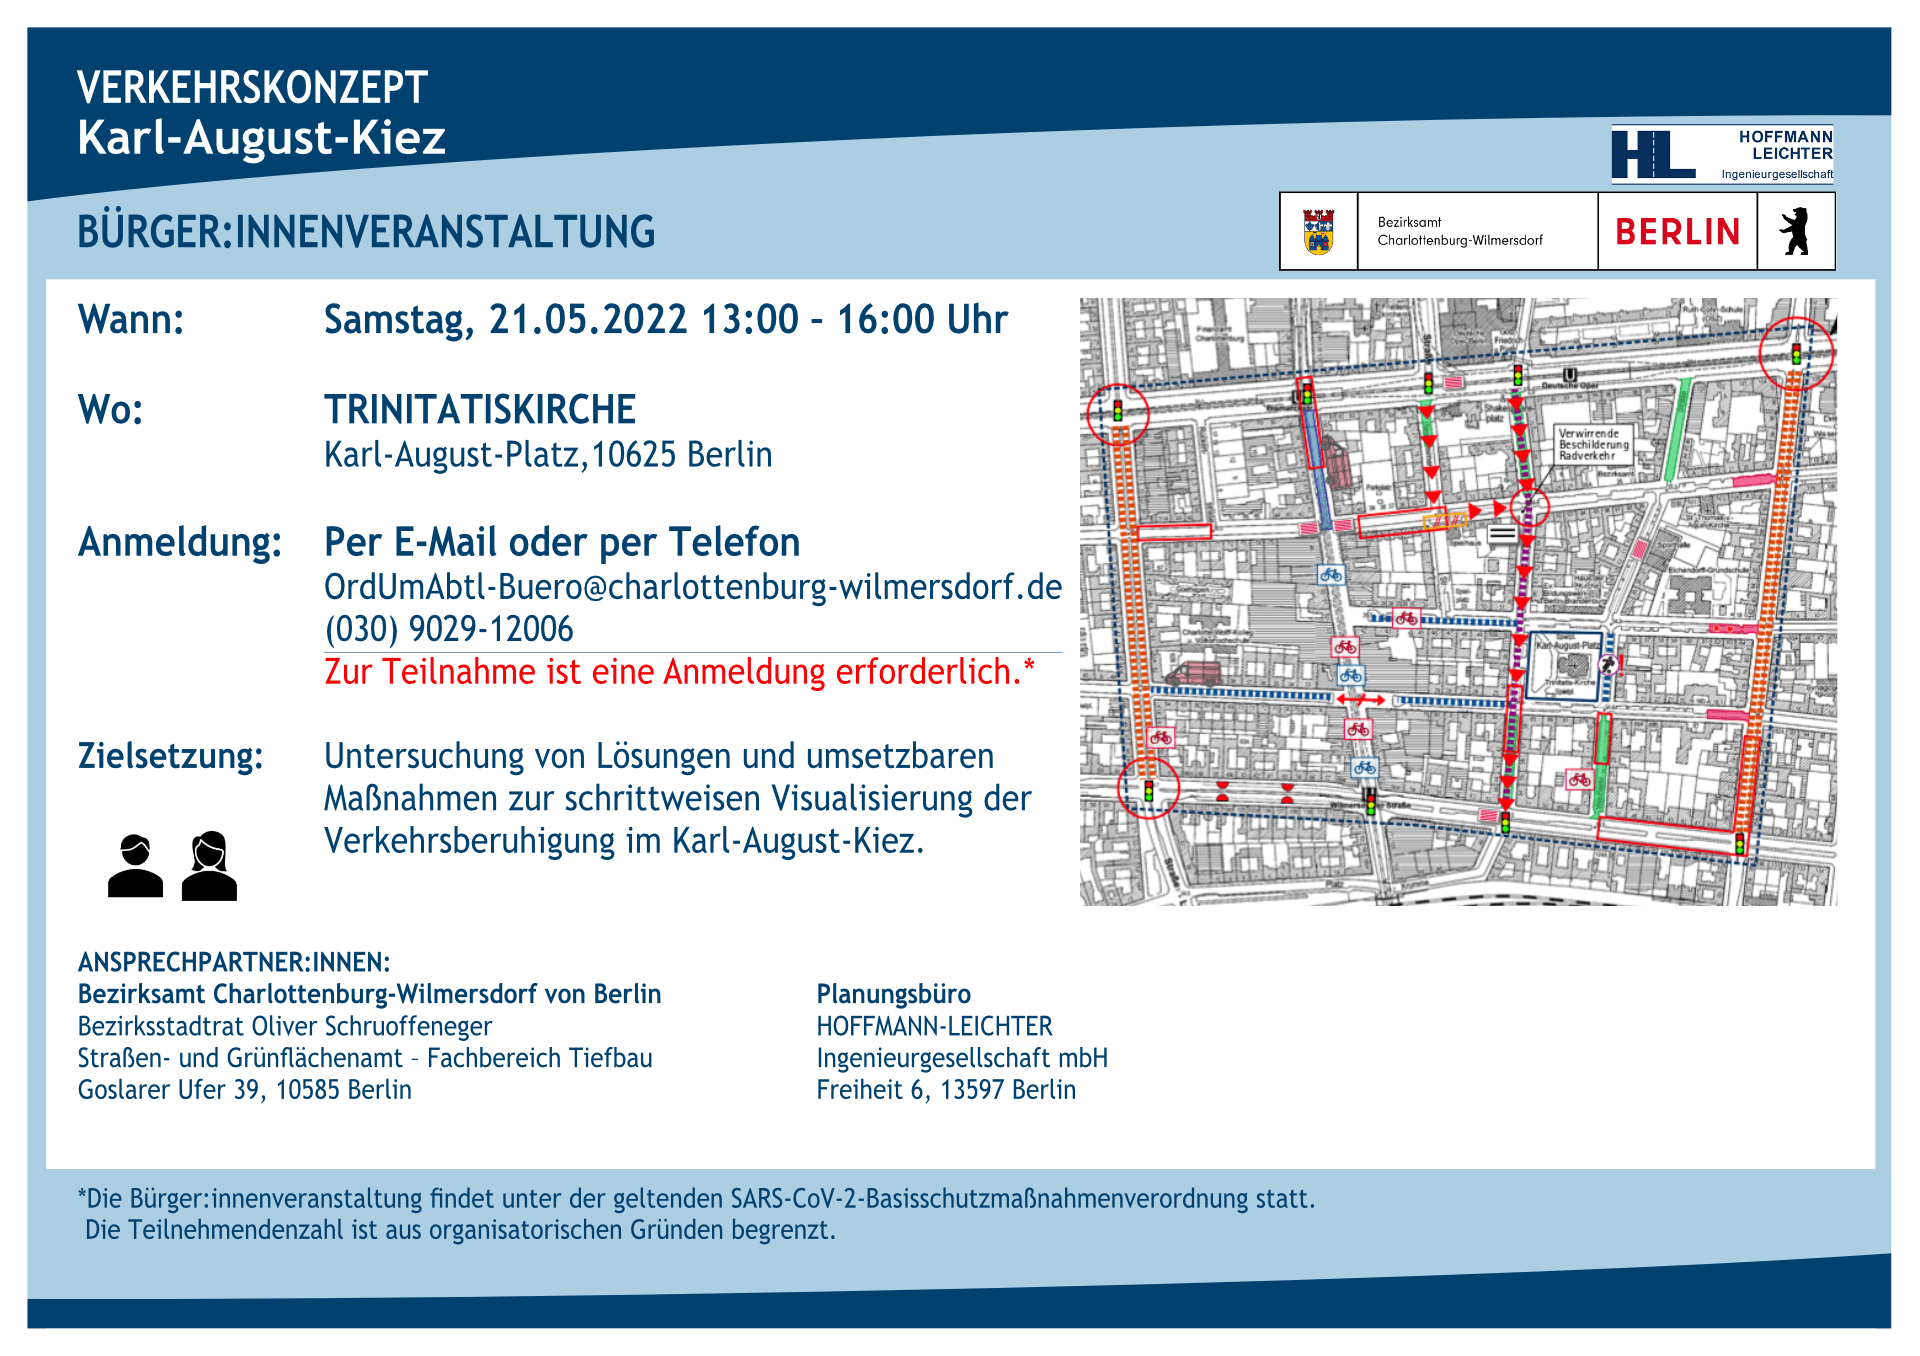 Einladung zur Öffentlichkeitsveranstaltung Verkehrskonzept Karl-August-Kiez, am Samstag, den 21. Mai 2022, in der Trinitatis-Kirche – Flyer BA Cha-Wi und Hoffmann-Leichter